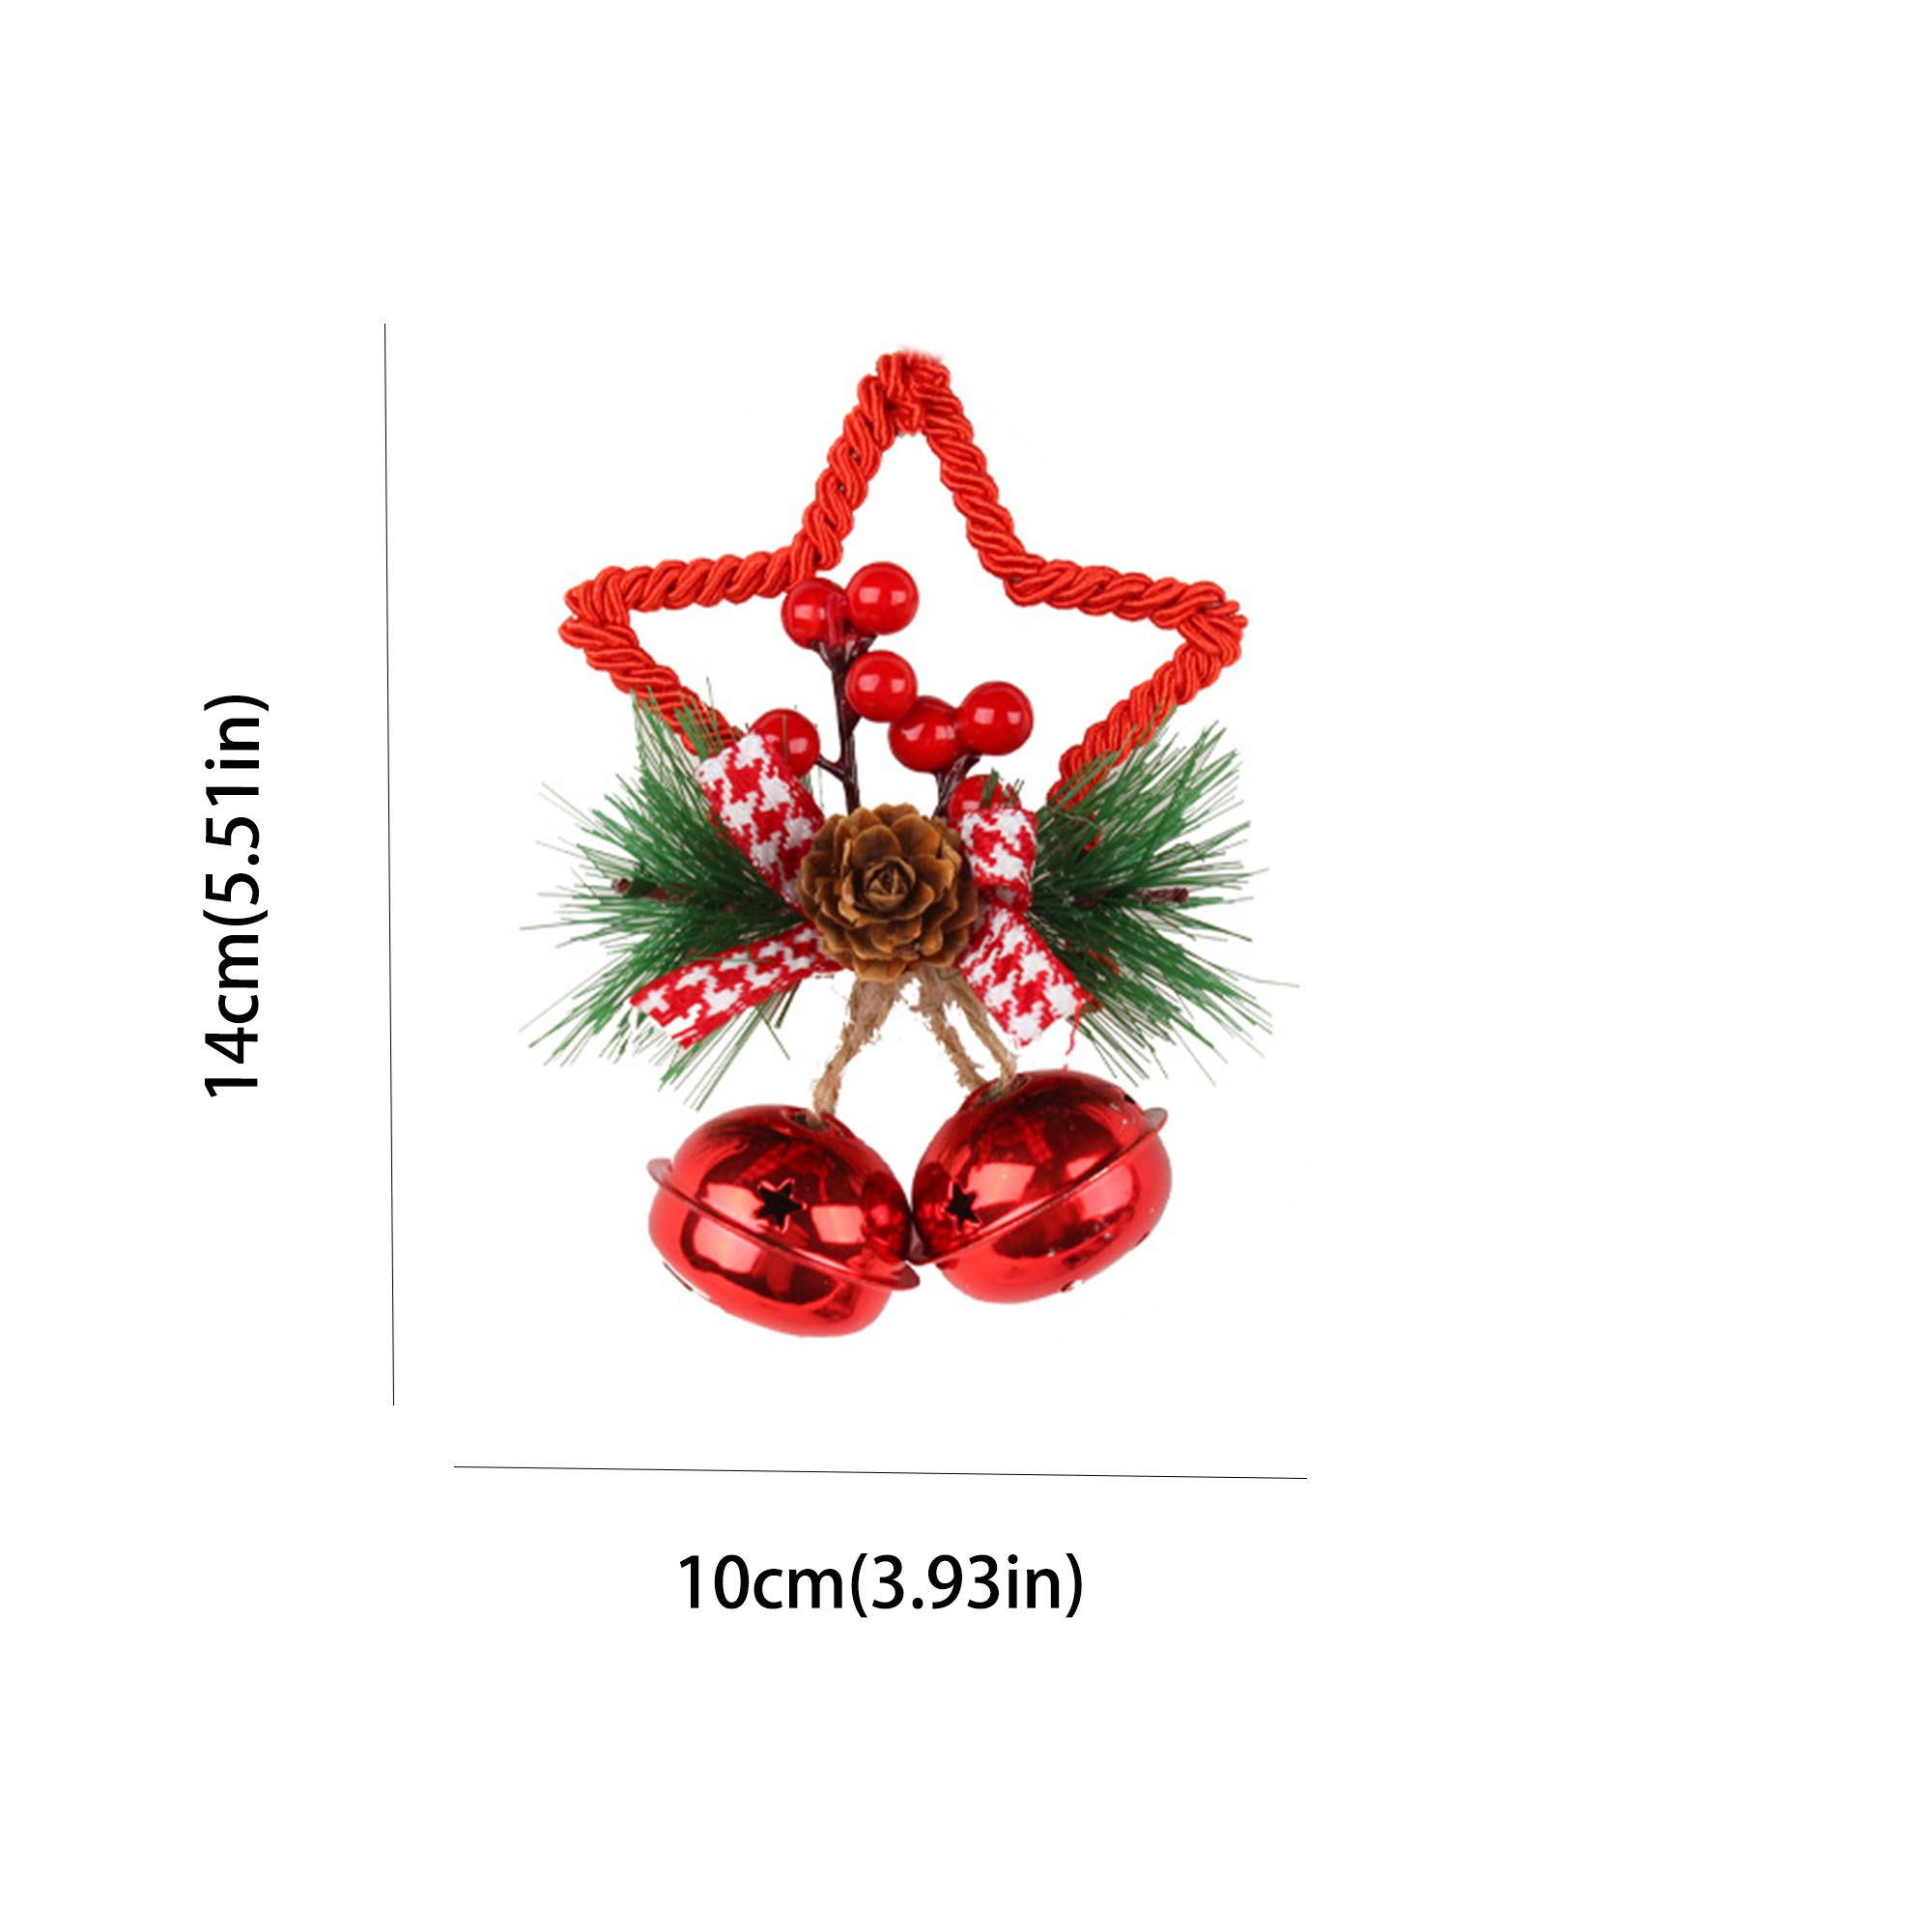 Décoration D’arbre De Noël Bricolage Avec Des Accessoires De Cloche étoile à Cinq Branches